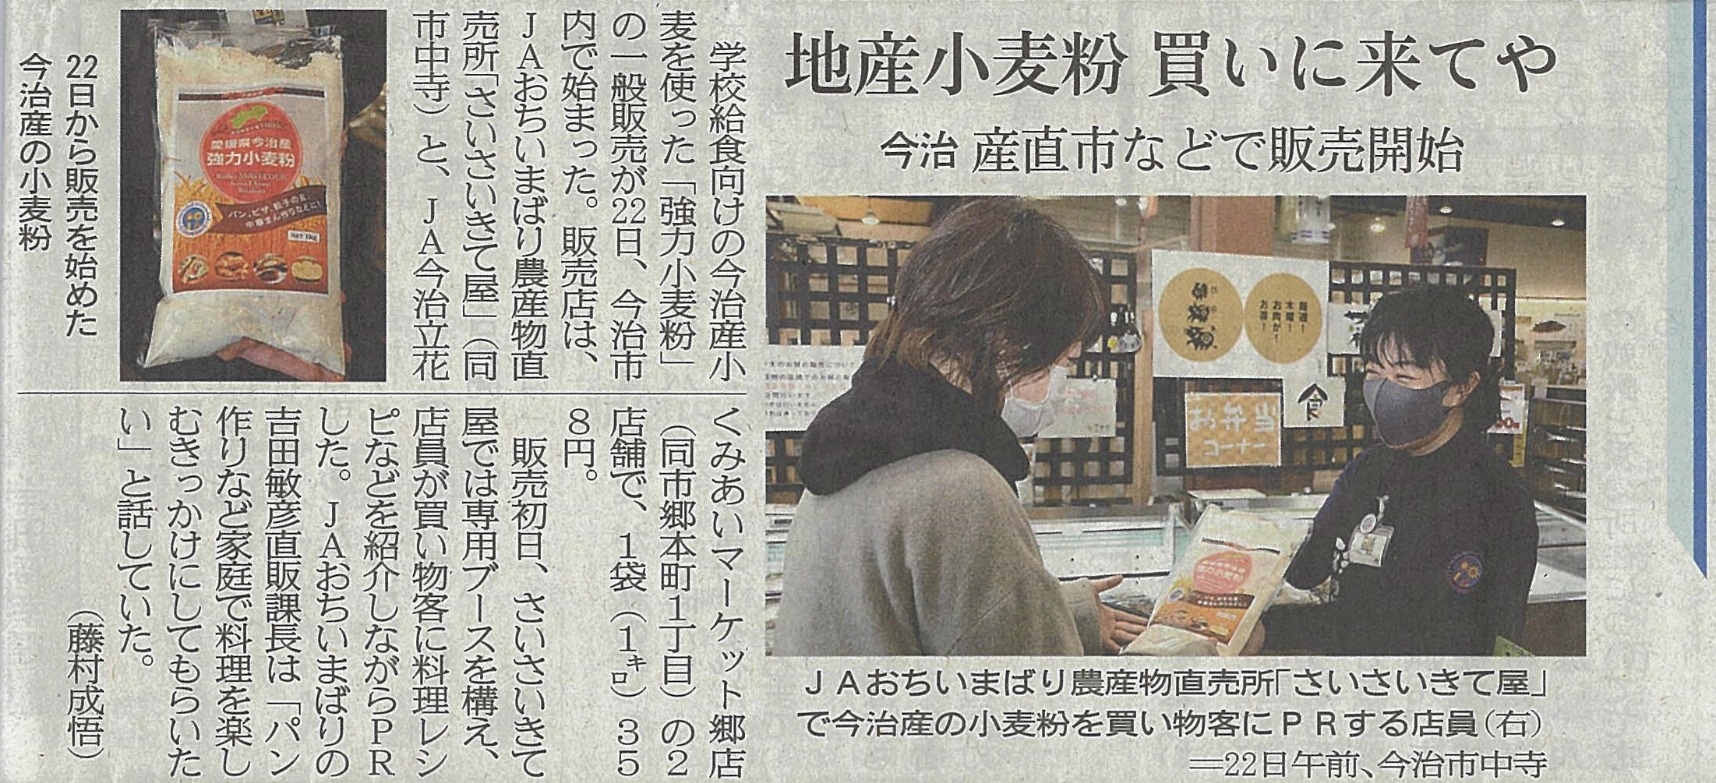 メディア情報『愛媛県今治産強力小麦粉』が愛媛新聞に掲載されました